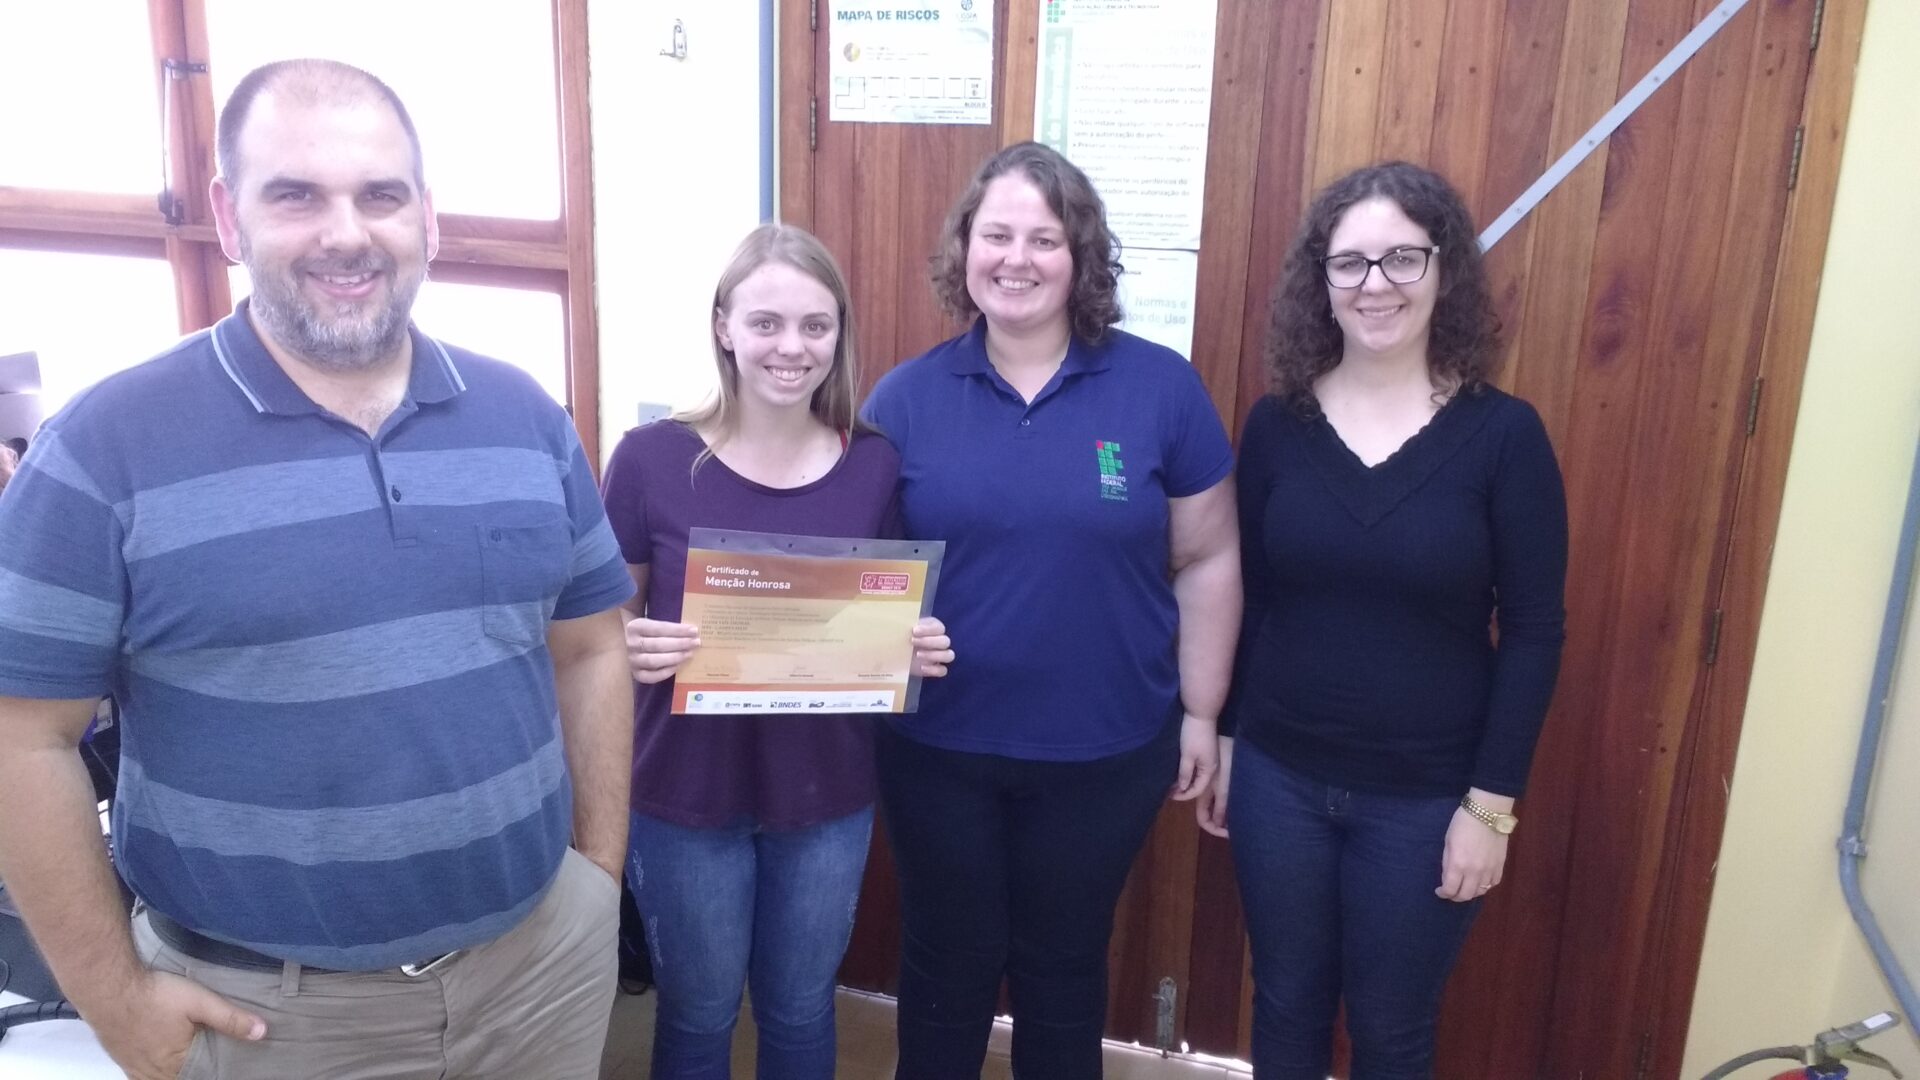 Estudantes do IFRS – Campus Erechim recebem certificado de Menção Honrosa  na 16ª Olimpíada Brasileira de Matemática das Escolas Públicas (OBMEP 2021)  - Campus Erechim